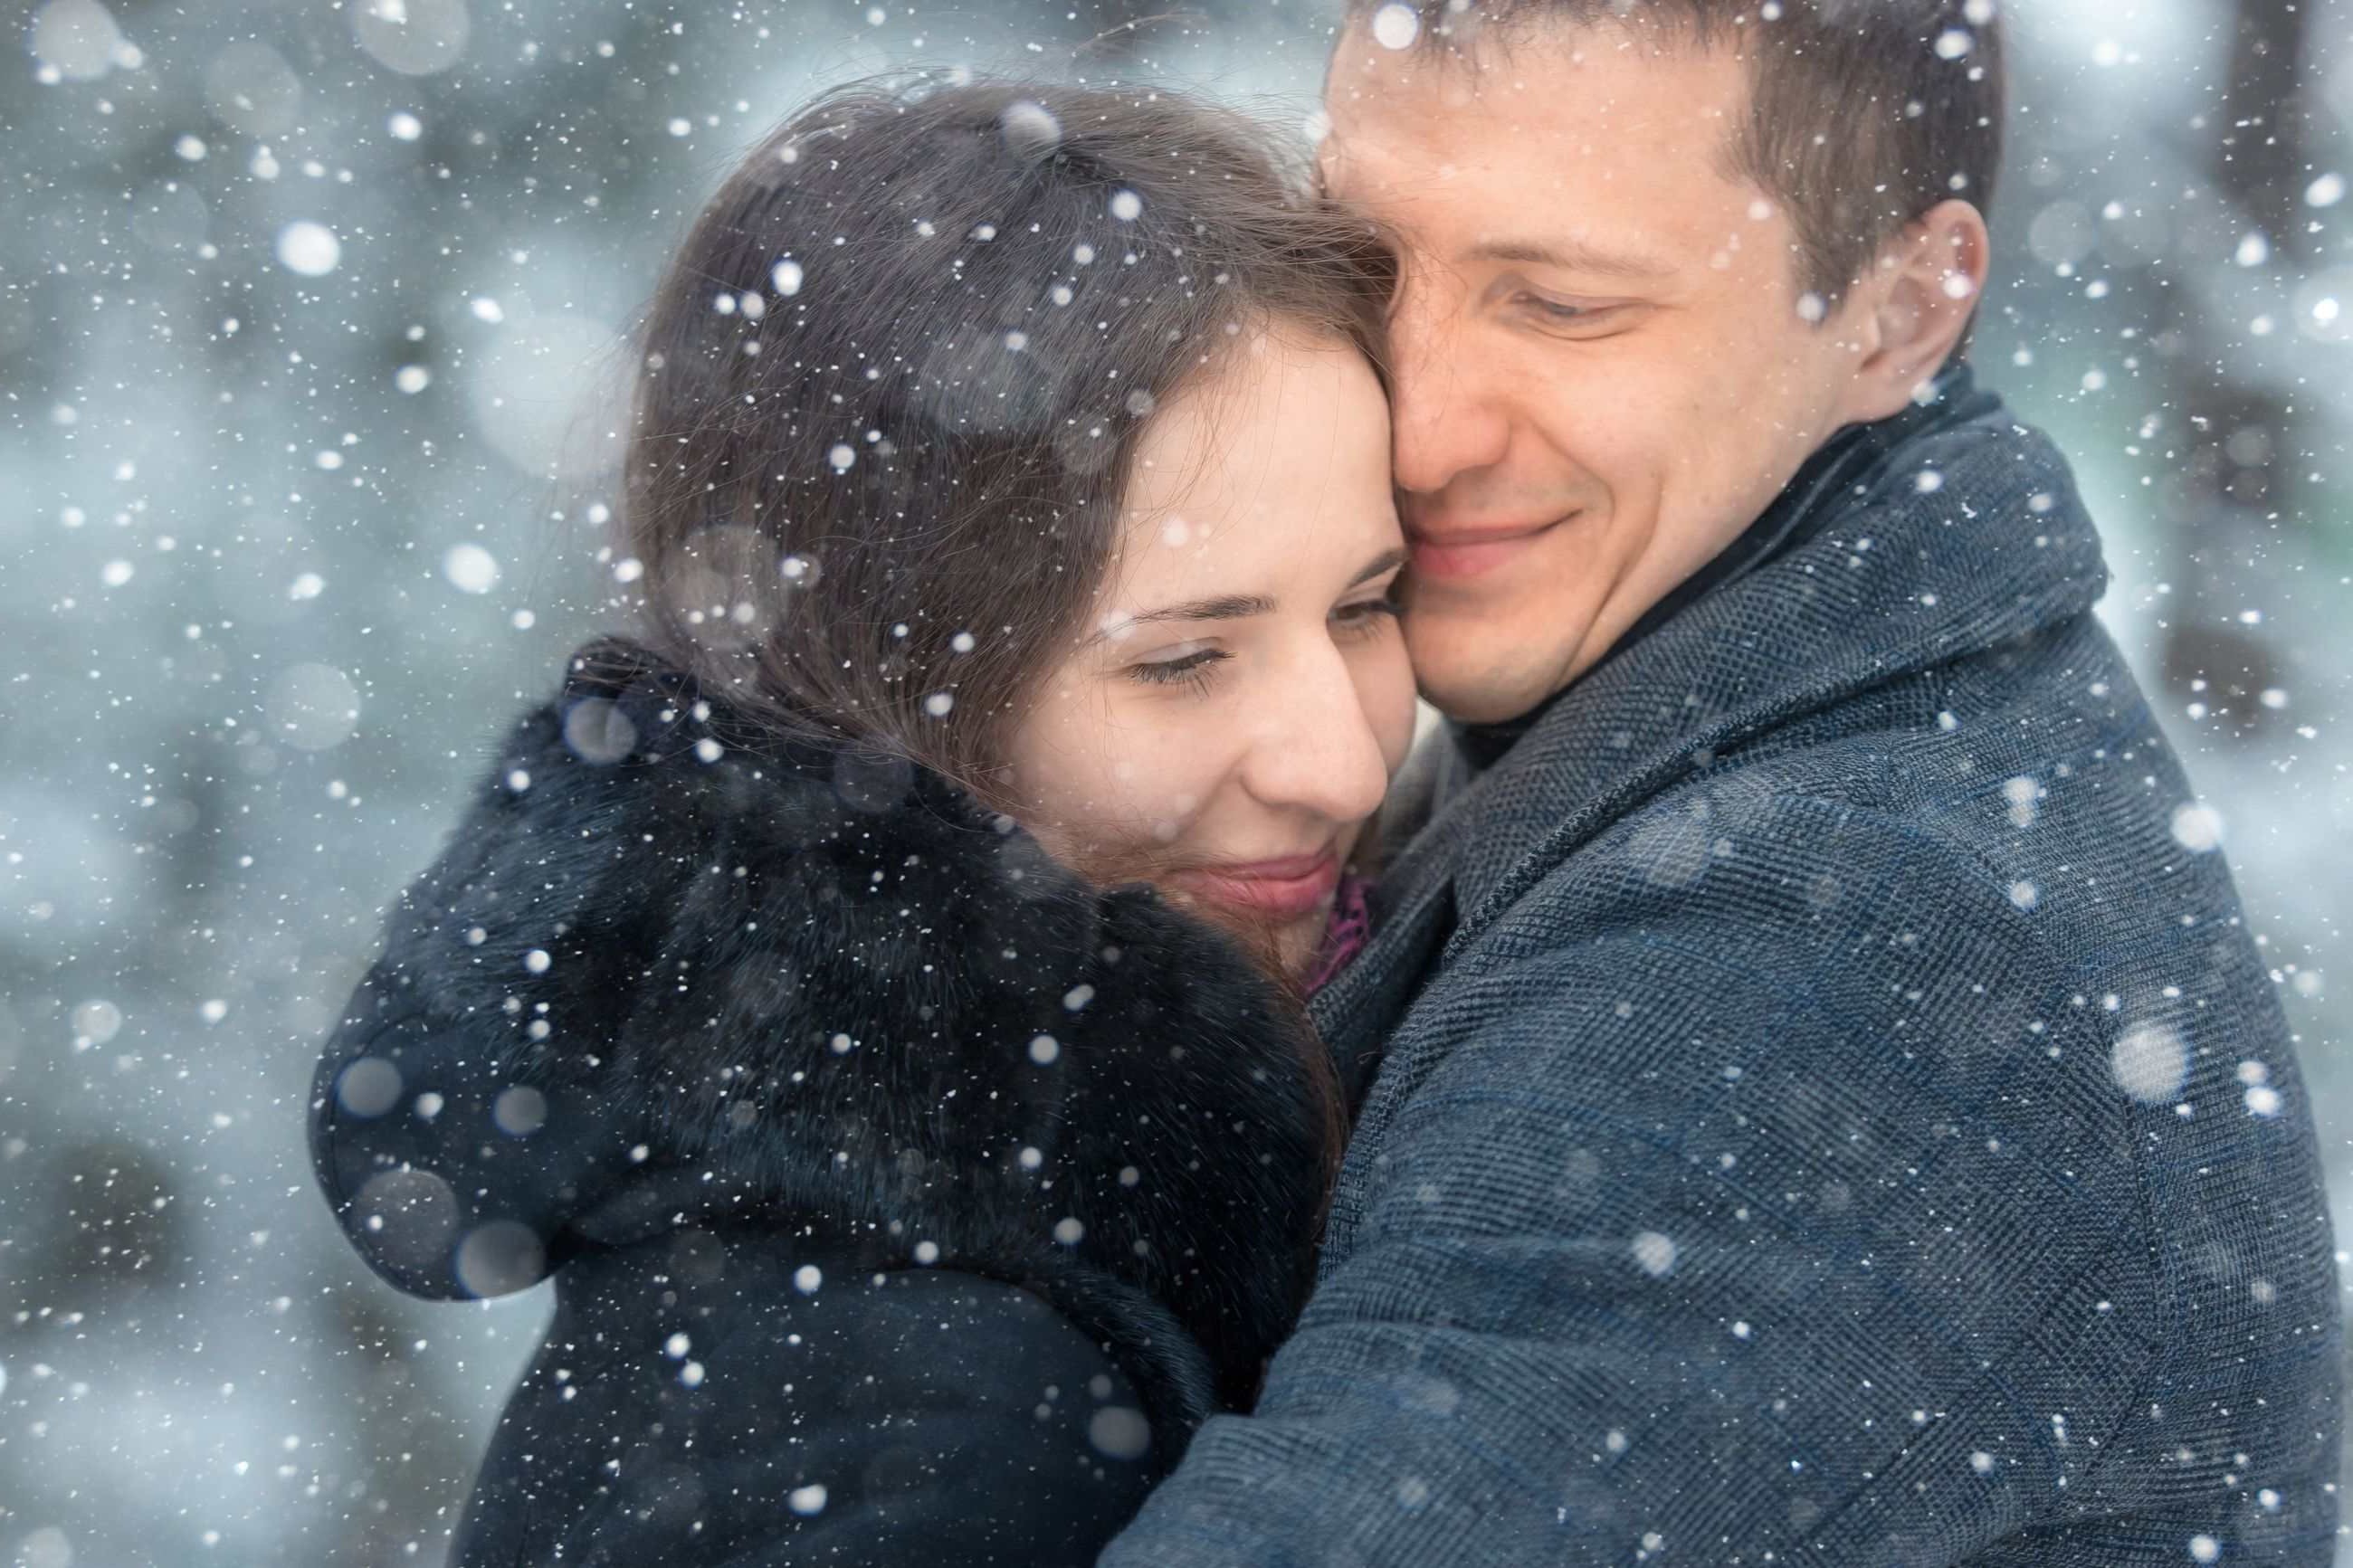 Песня люблю зиму. Влюбленные зимой. Влюбленные в снегу. Встреча влюбленных зимой. Мужчина и женщина зима.